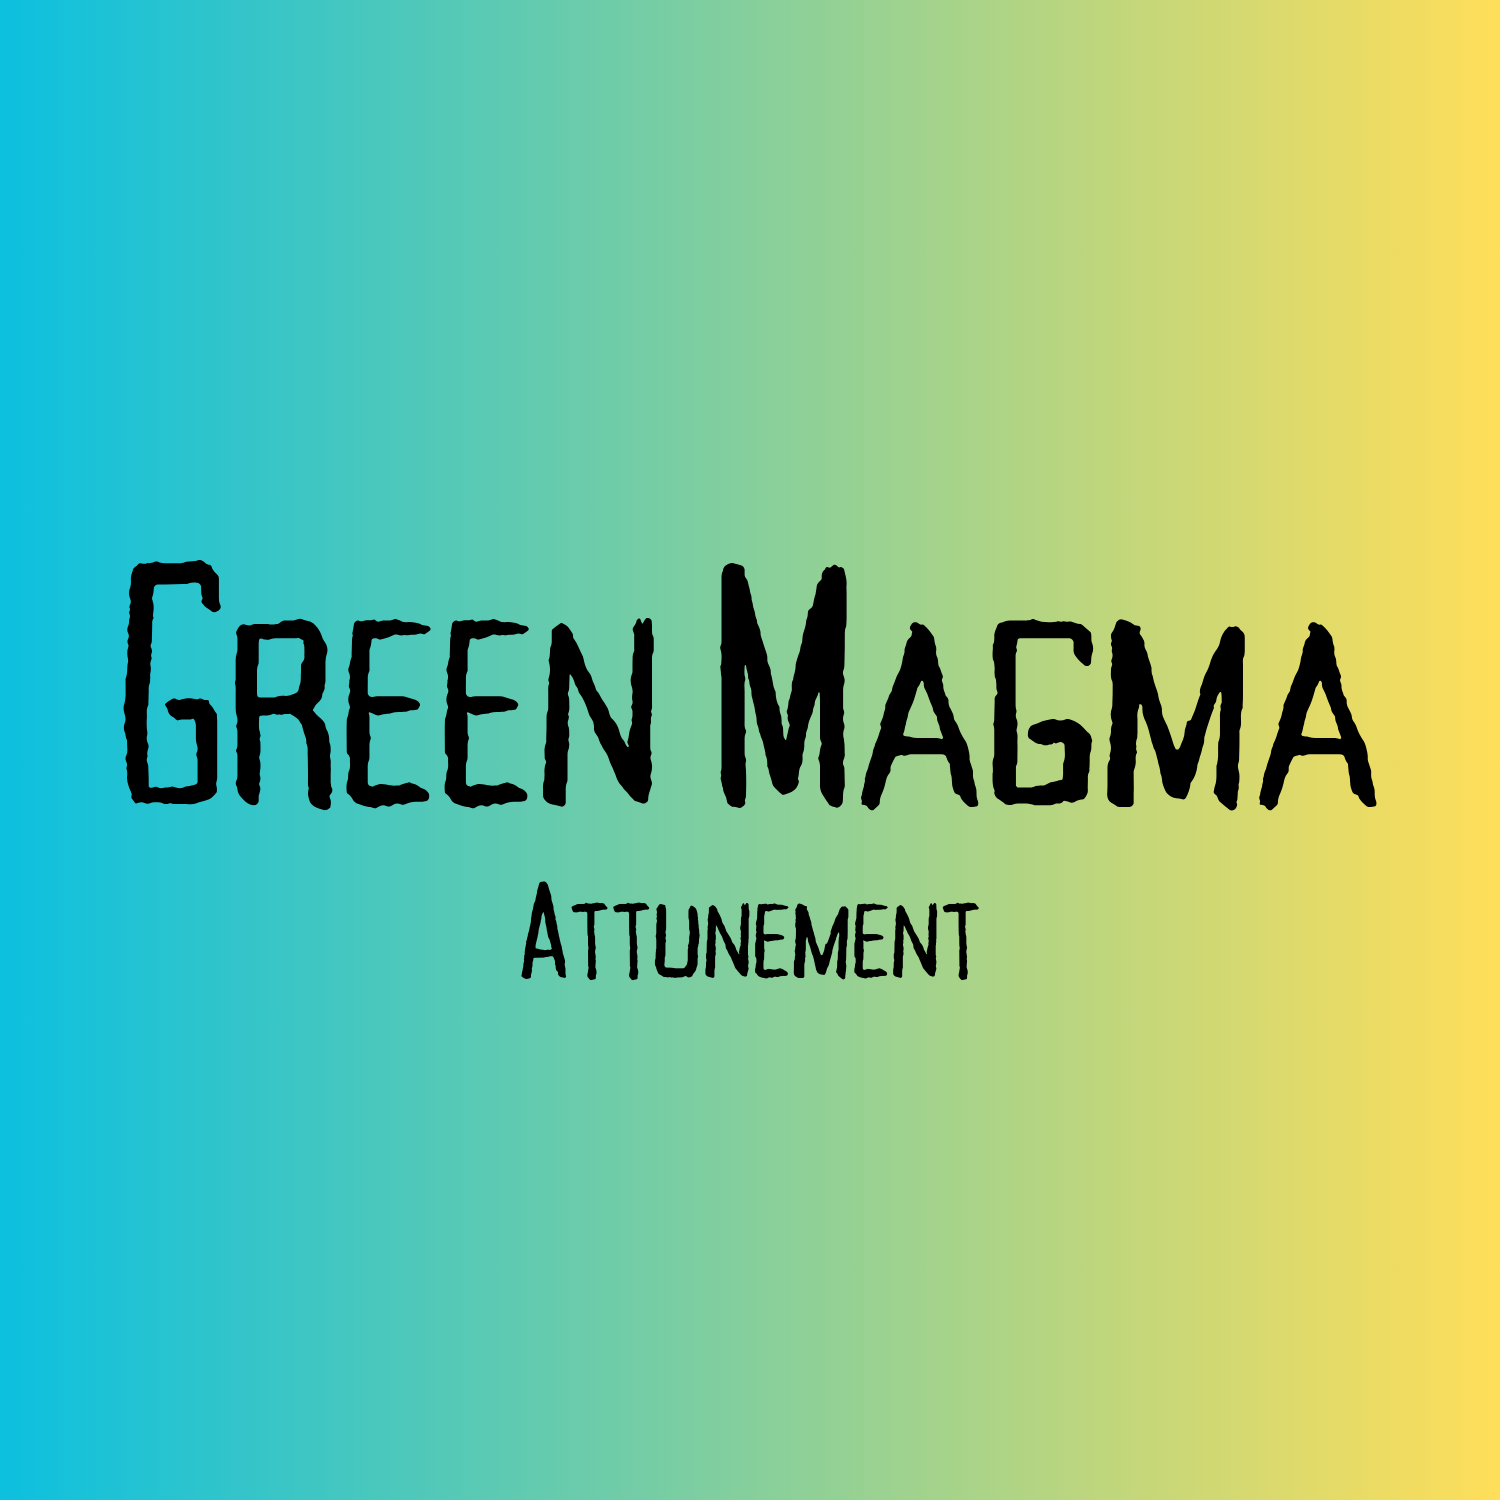 NEW! Green Magma Attunement Grounding Energy Healing